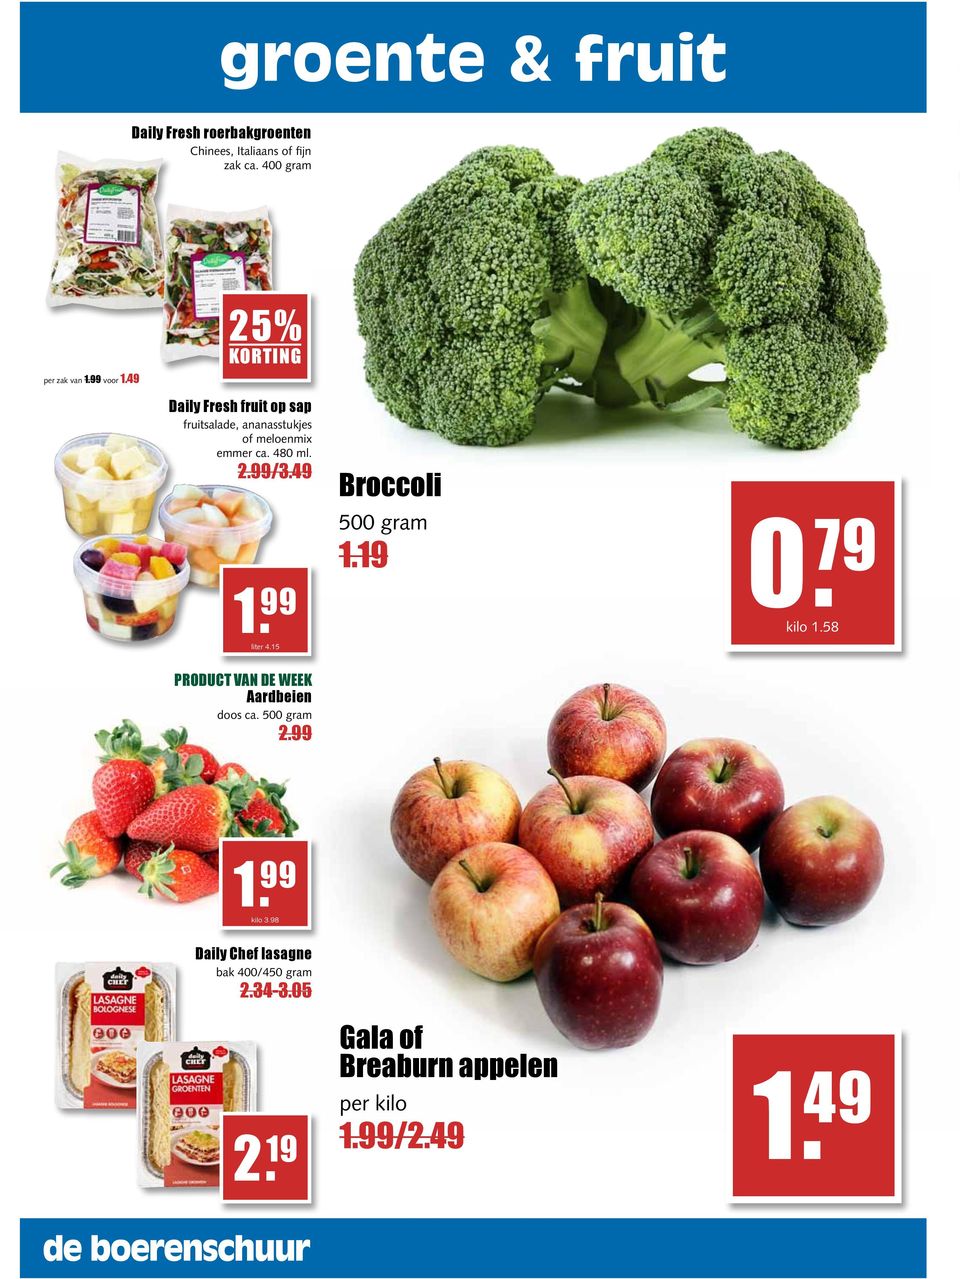 99 liter 4.15 PRODUCT VAN DE WEEK Aardbeien doos ca. 500 gram 2.99 Broccoli 500 gram 1.19 0. 79 kilo 1.58 1.